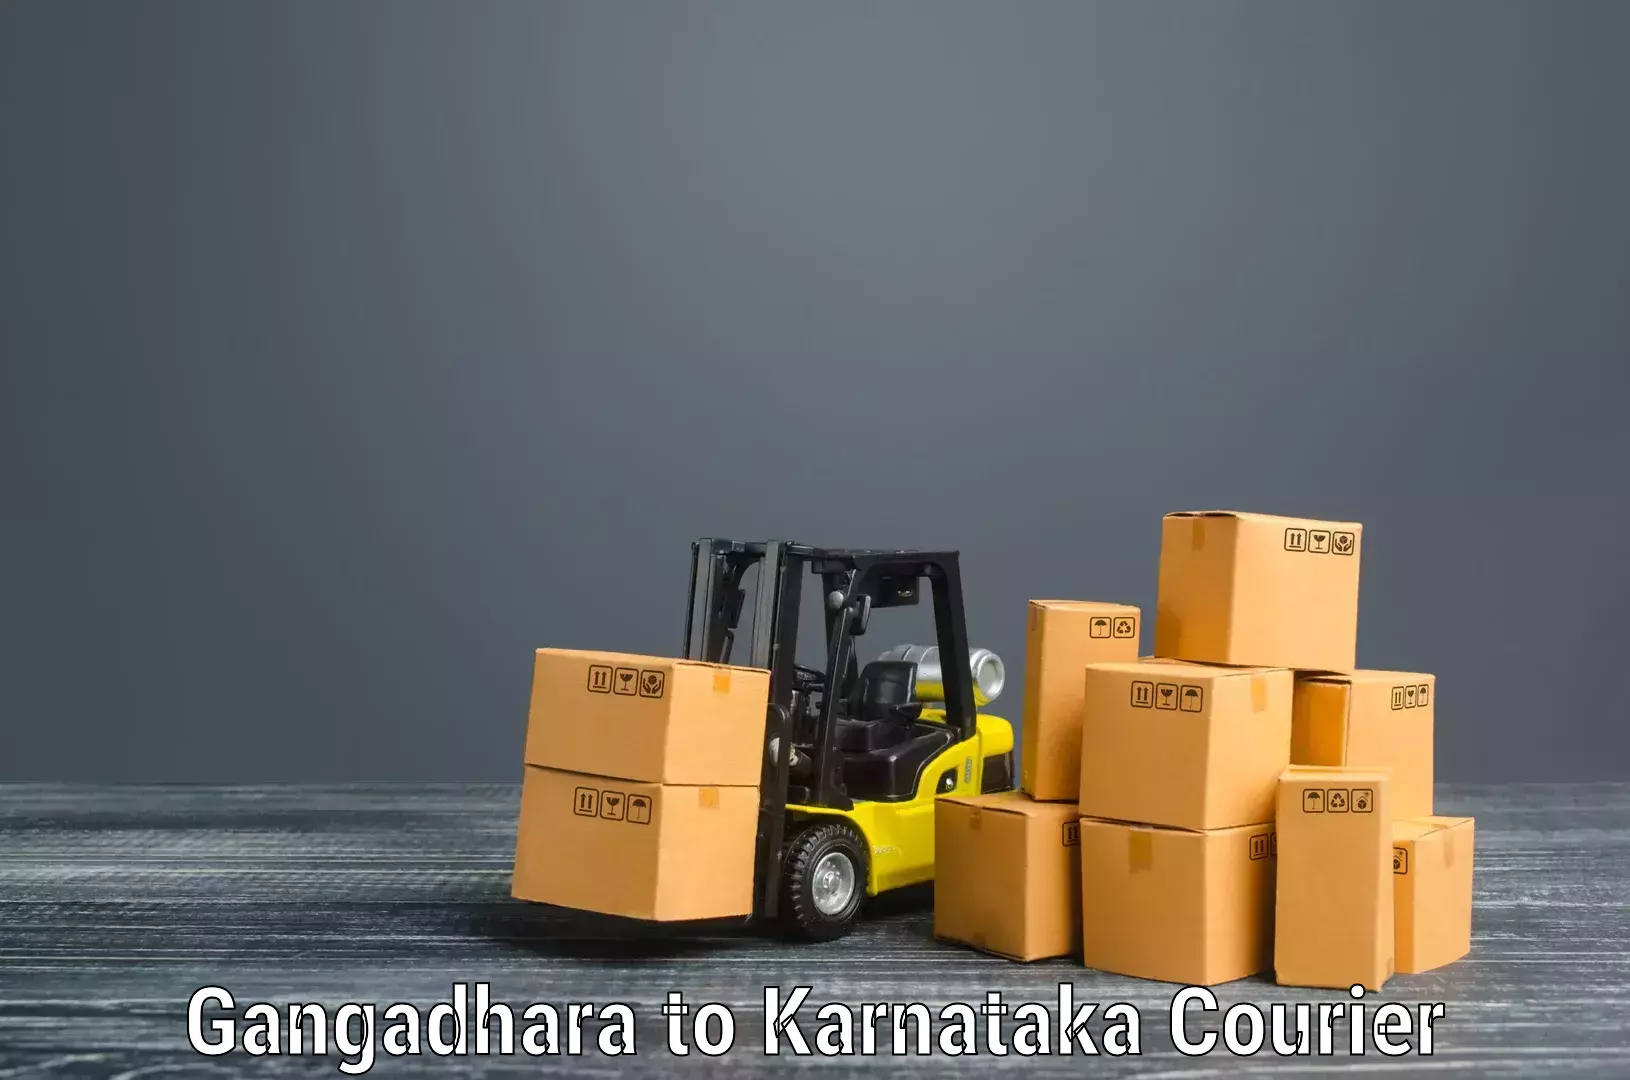 Furniture moving experts Gangadhara to Chikodi